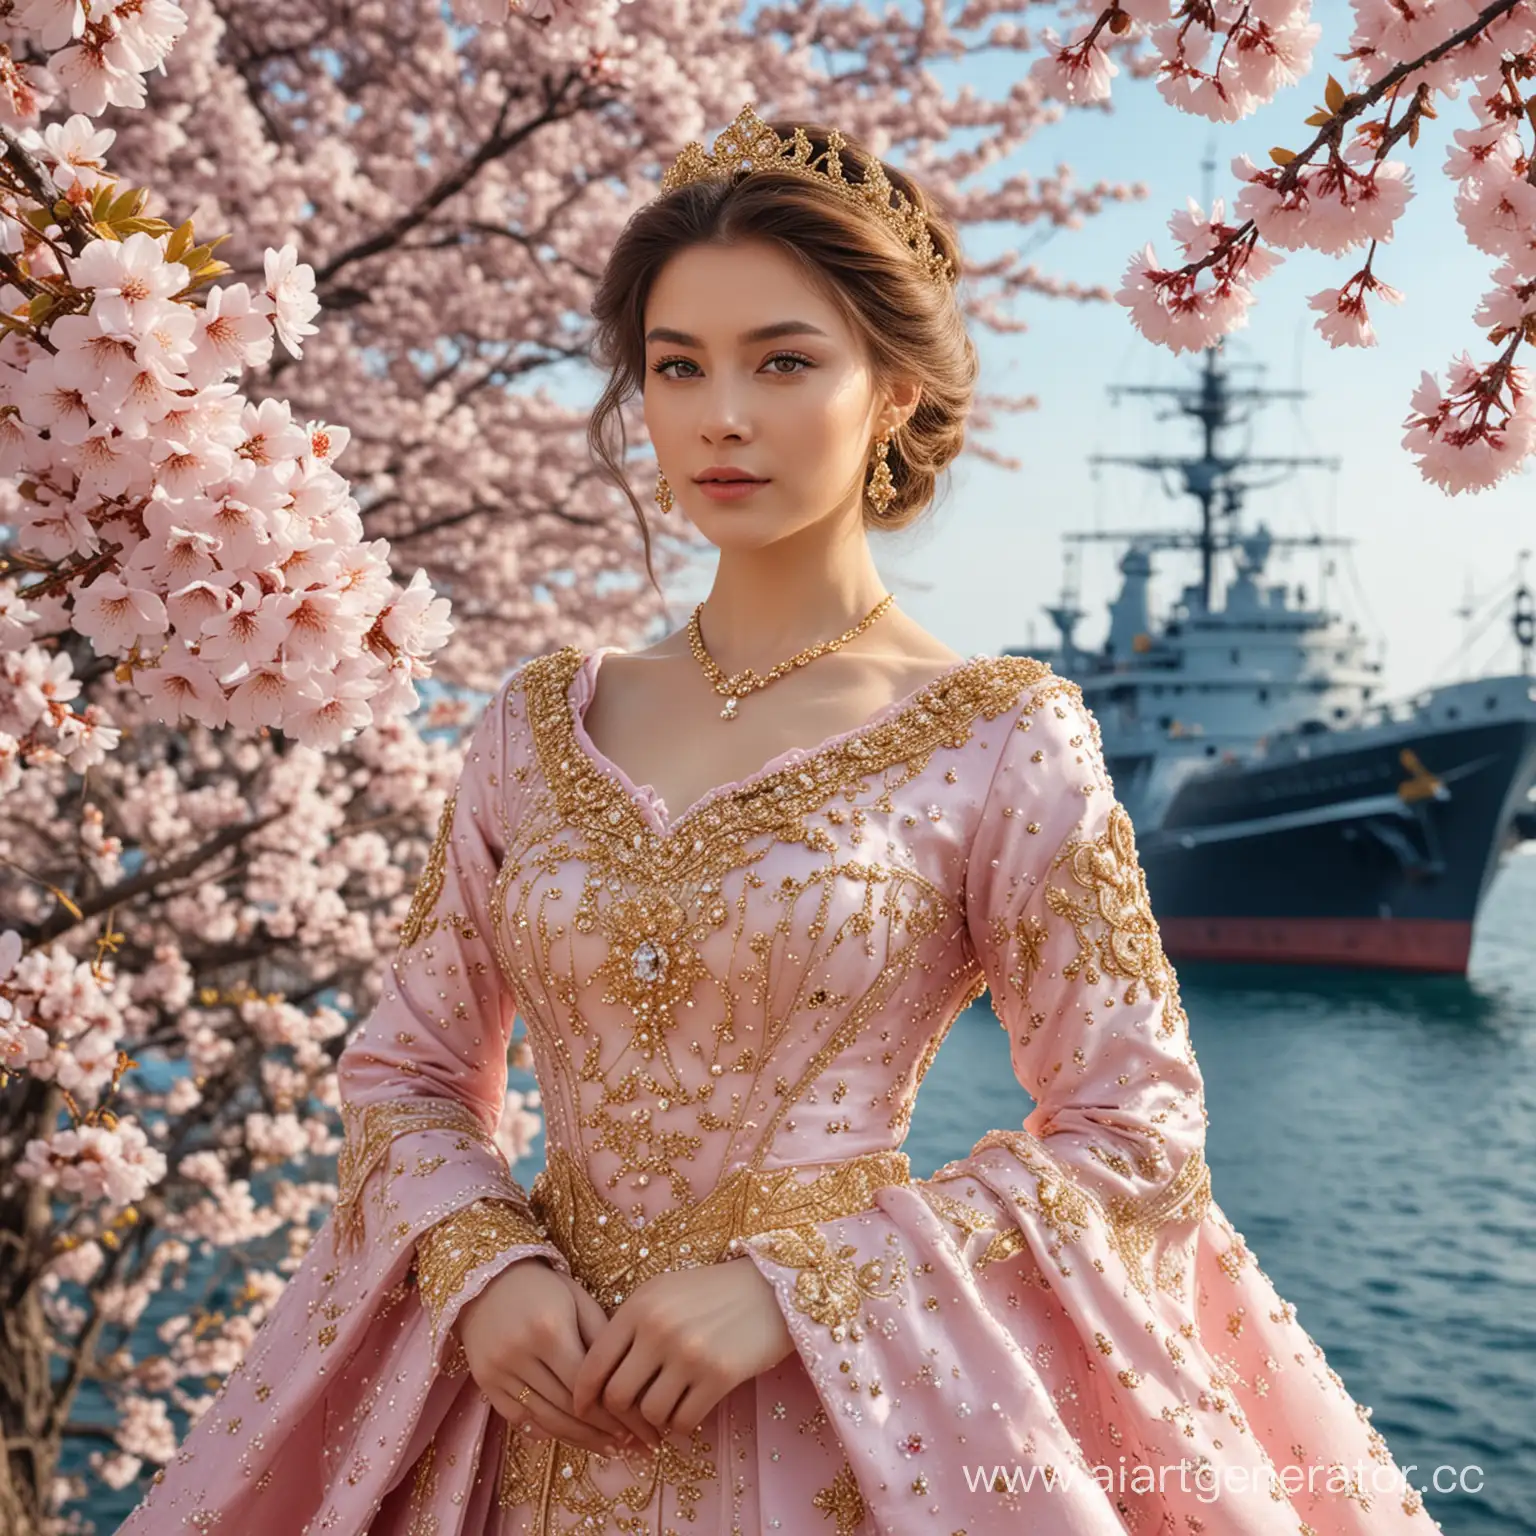 Алина красивая в шикарном королевском платье в бриллиантах и золоте среди цветущей сакуры на фоне фрегата